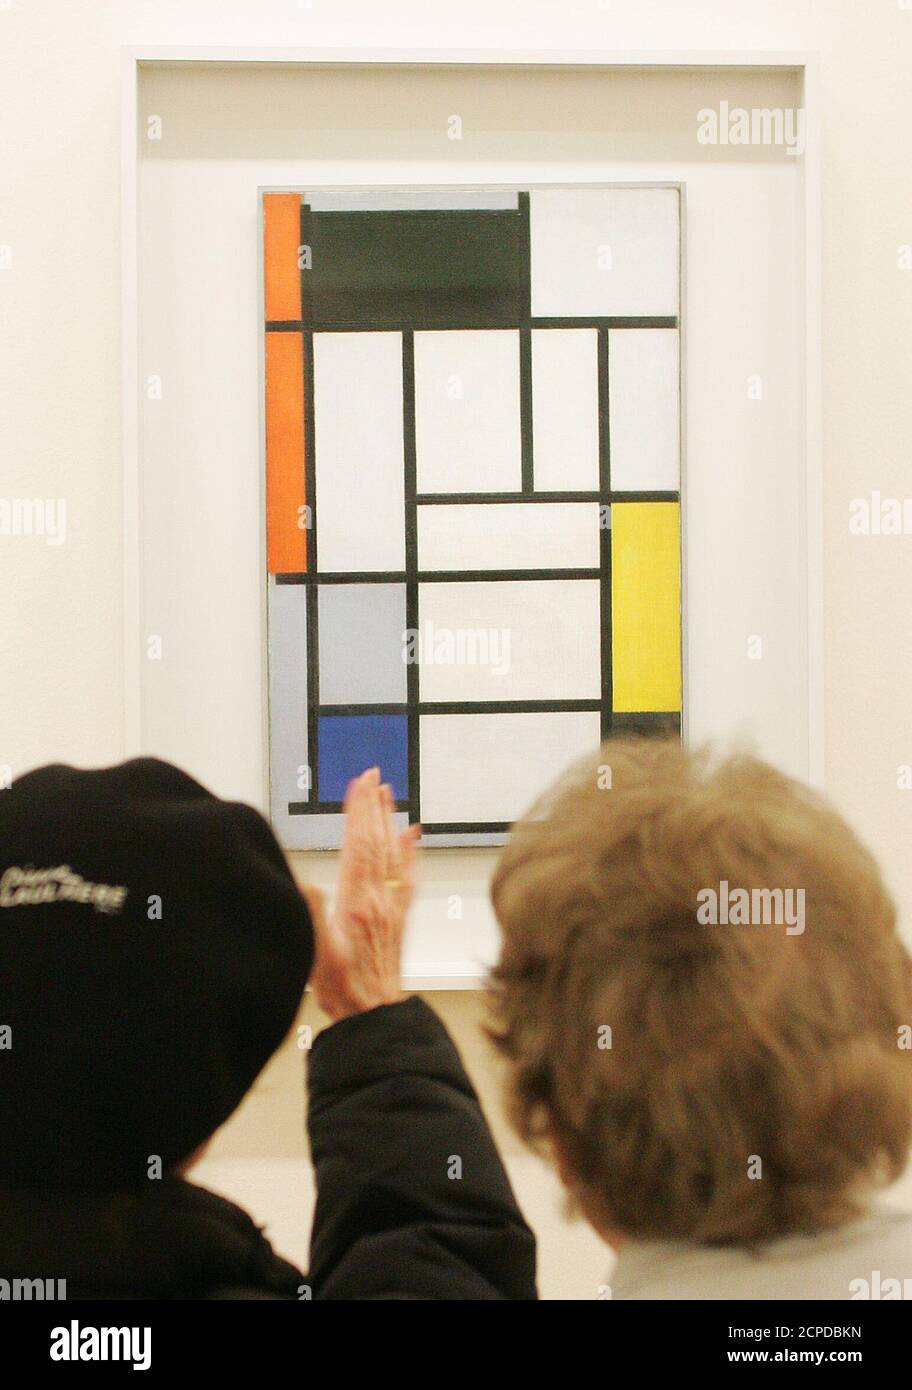 In der Albertina in Wien wird am 11. Maerz eine Ausstellung von Werken des hollaendischen Kuenstlers Piet Mondrian eroeffnet. Im Bild bestaunen Besucher ein Werk Mondrians waehrend einer Pressefuehrung am 10. Maerz 2005. REUTERS/Herwig Prammer REUTERS  PR/ Stock Photo